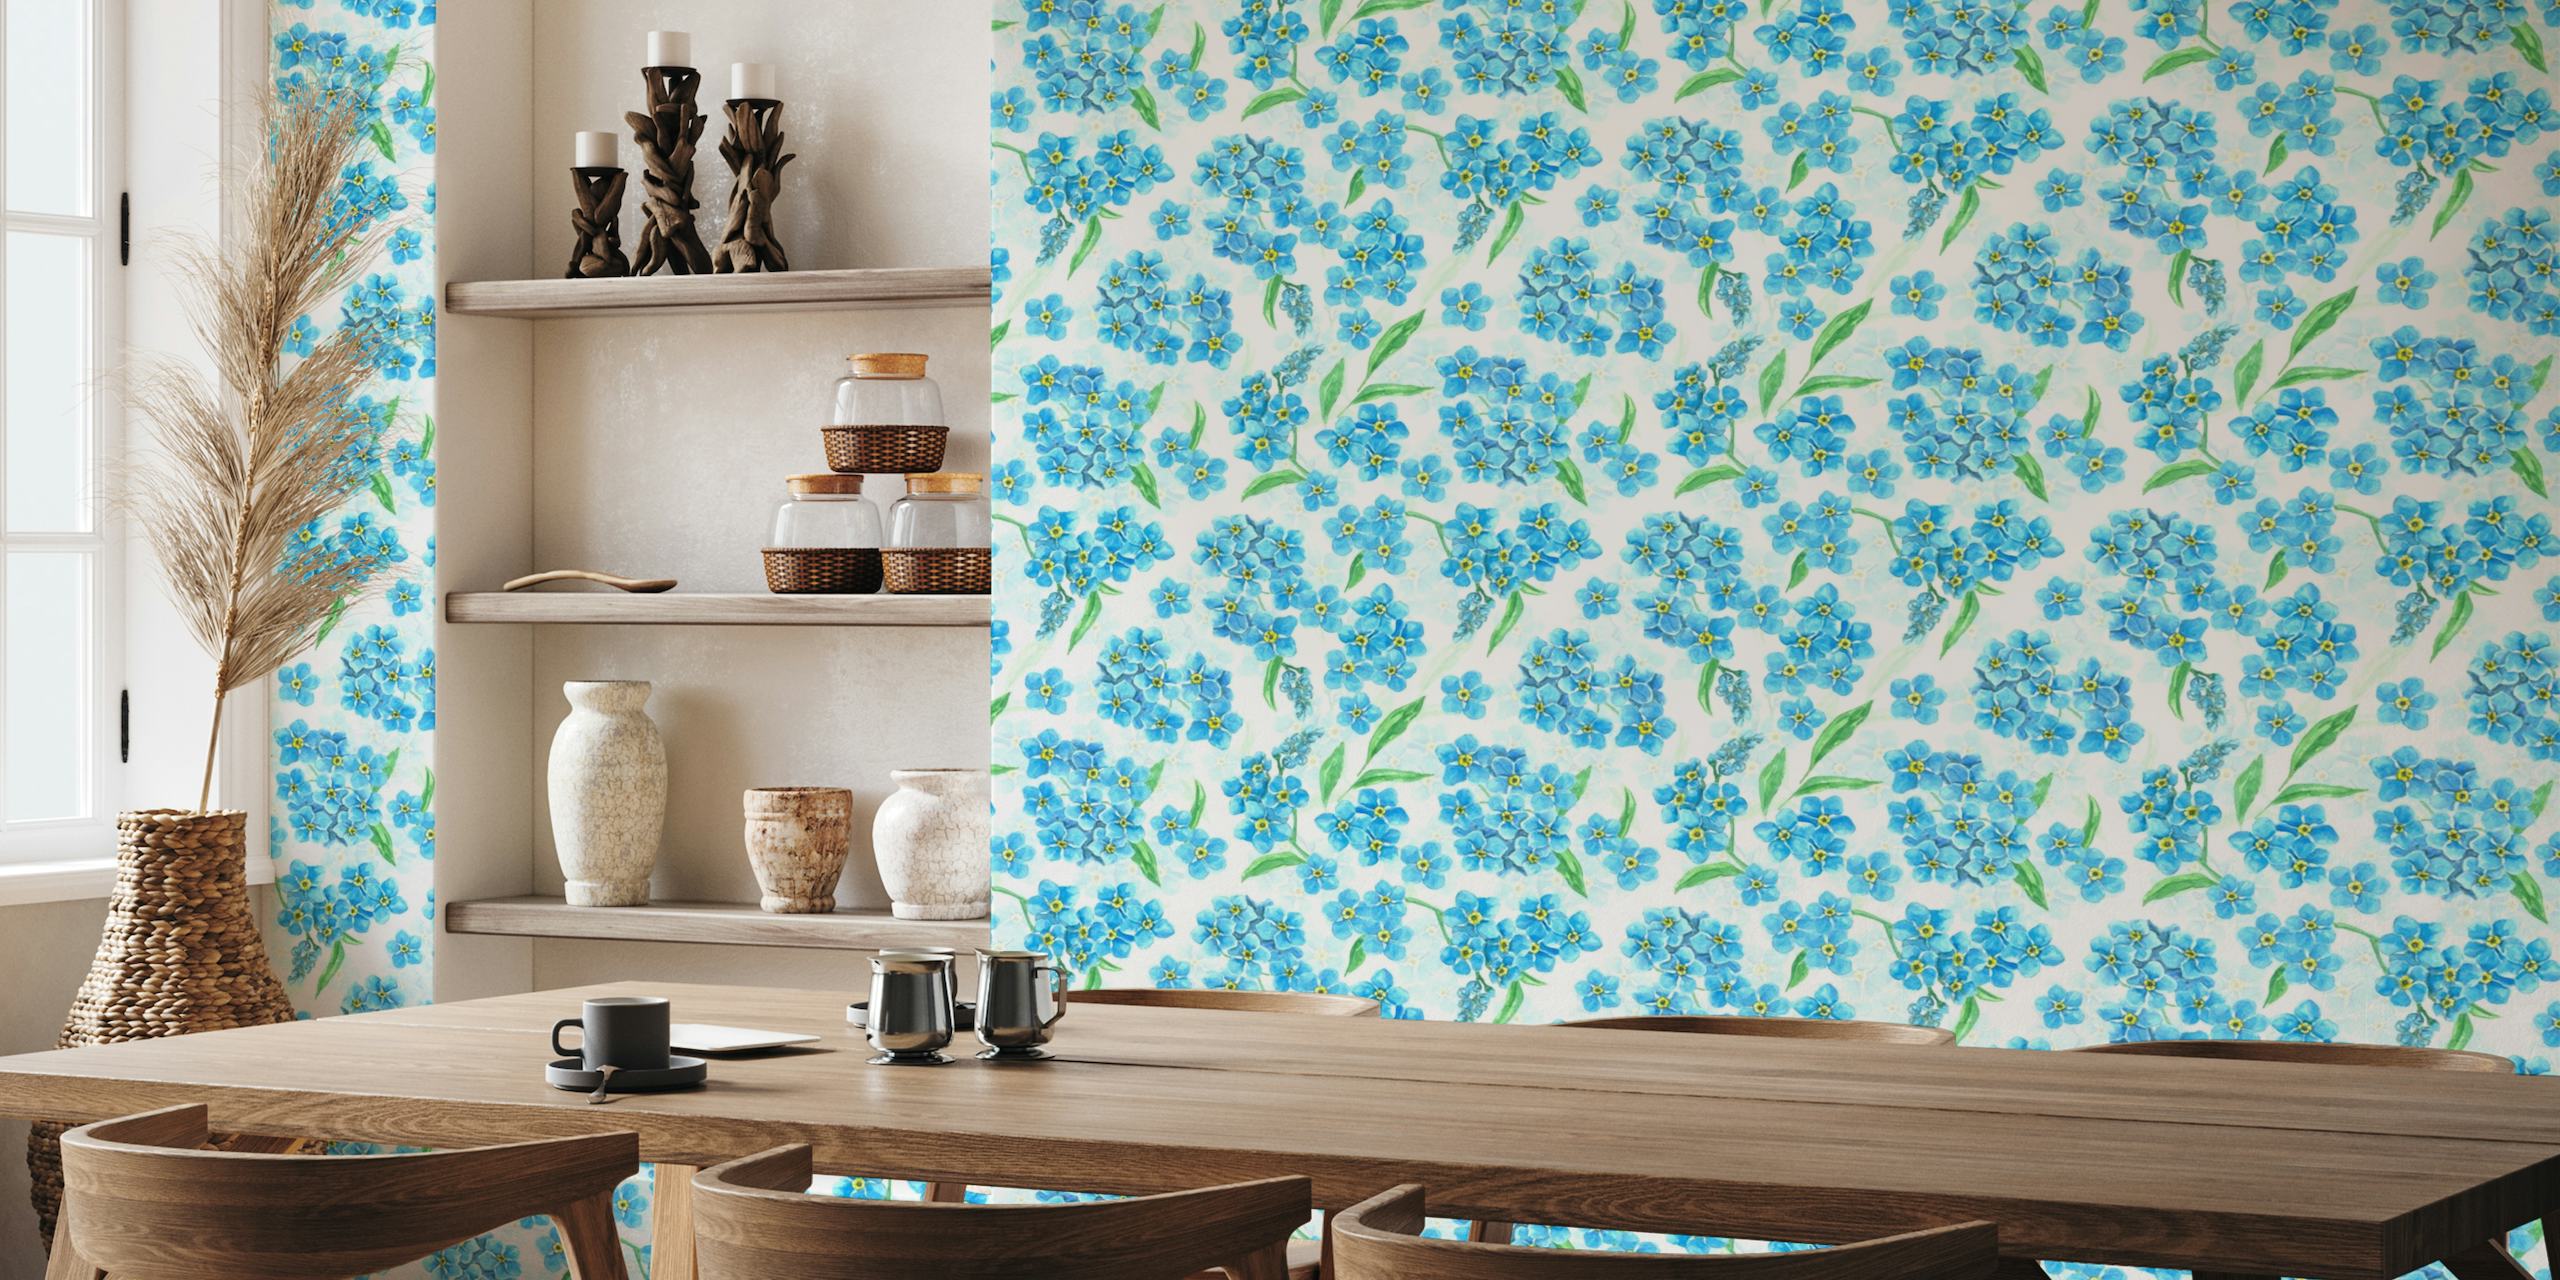 Ein Wandbild mit einem Muster aus blauen Vergissmeinnicht-Blüten und grünen Blättern auf weißem Hintergrund.